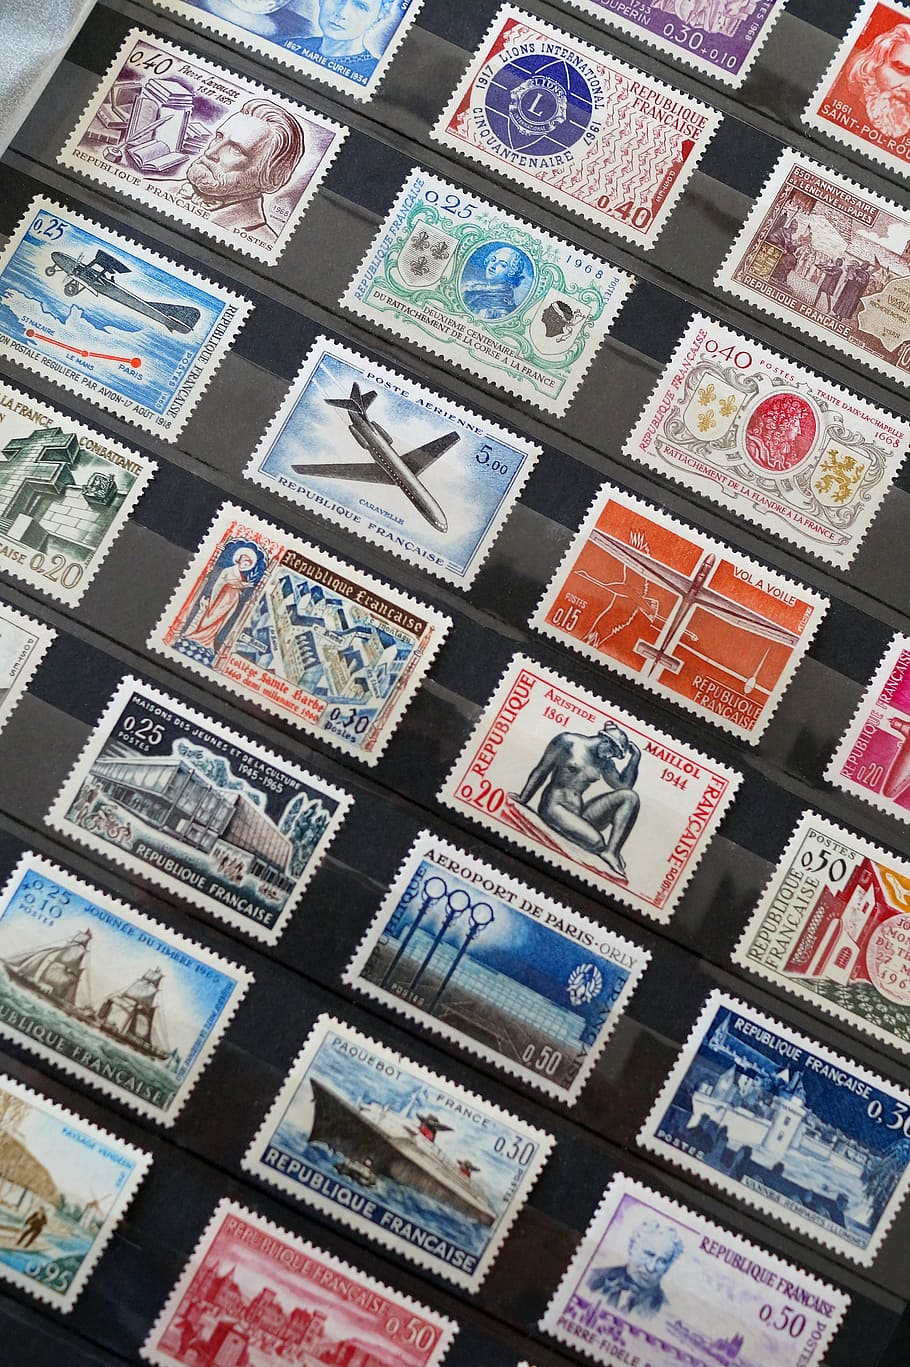 切手コレクション, 切手, コレクション, 切手収集, フランス切手, 投稿, 背景, フルフレーム, パターン, マルチカラー